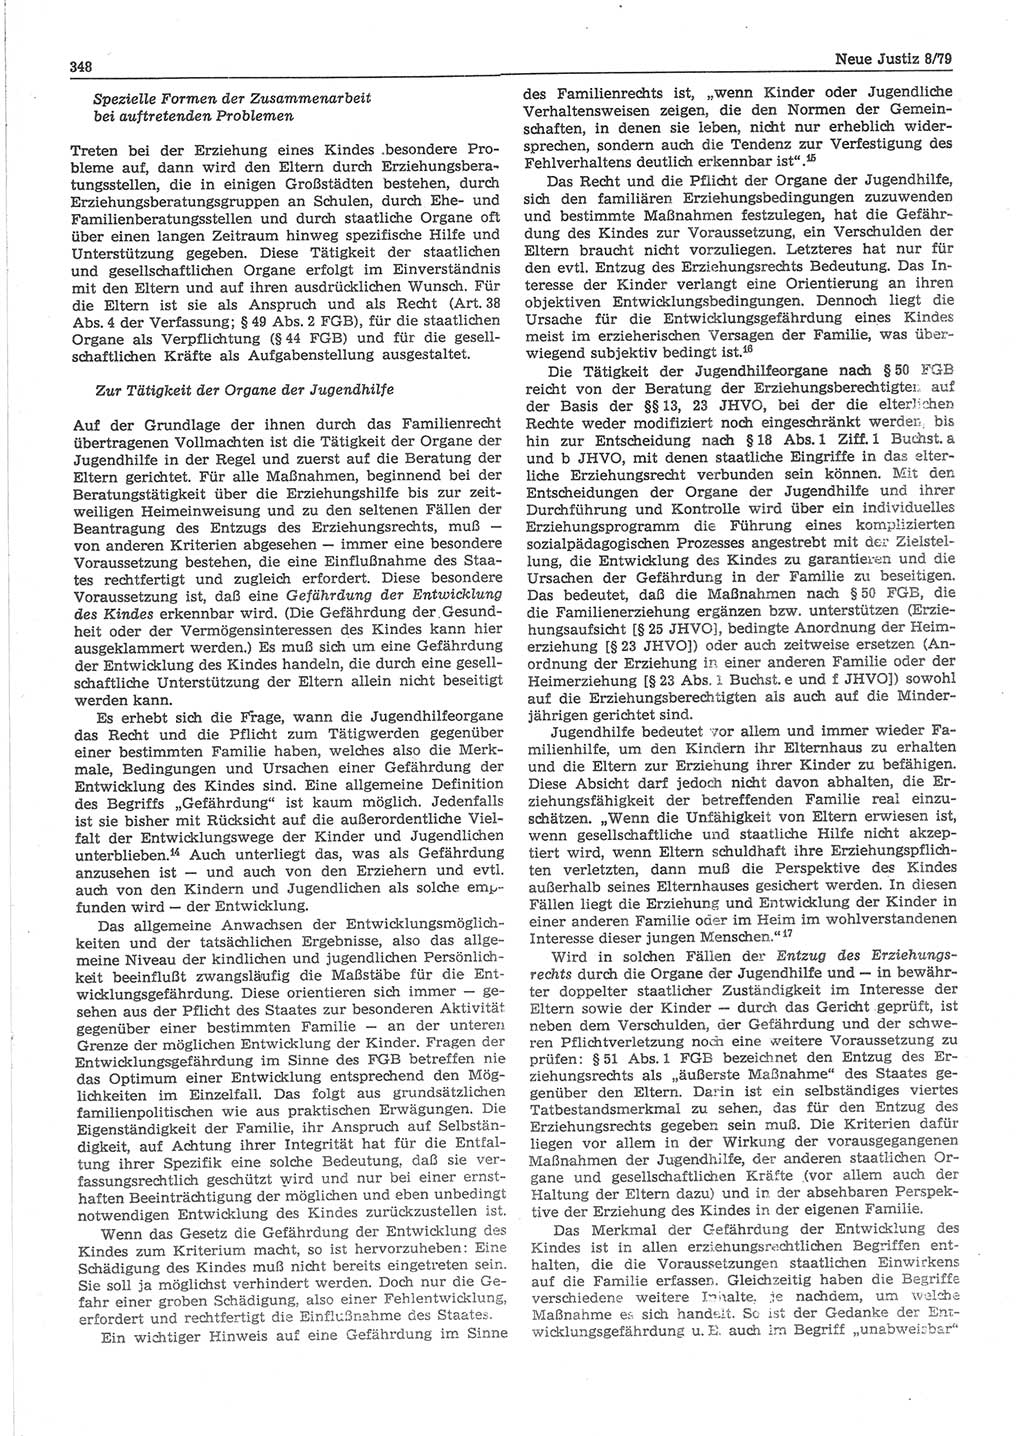 Neue Justiz (NJ), Zeitschrift für sozialistisches Recht und Gesetzlichkeit [Deutsche Demokratische Republik (DDR)], 33. Jahrgang 1979, Seite 348 (NJ DDR 1979, S. 348)